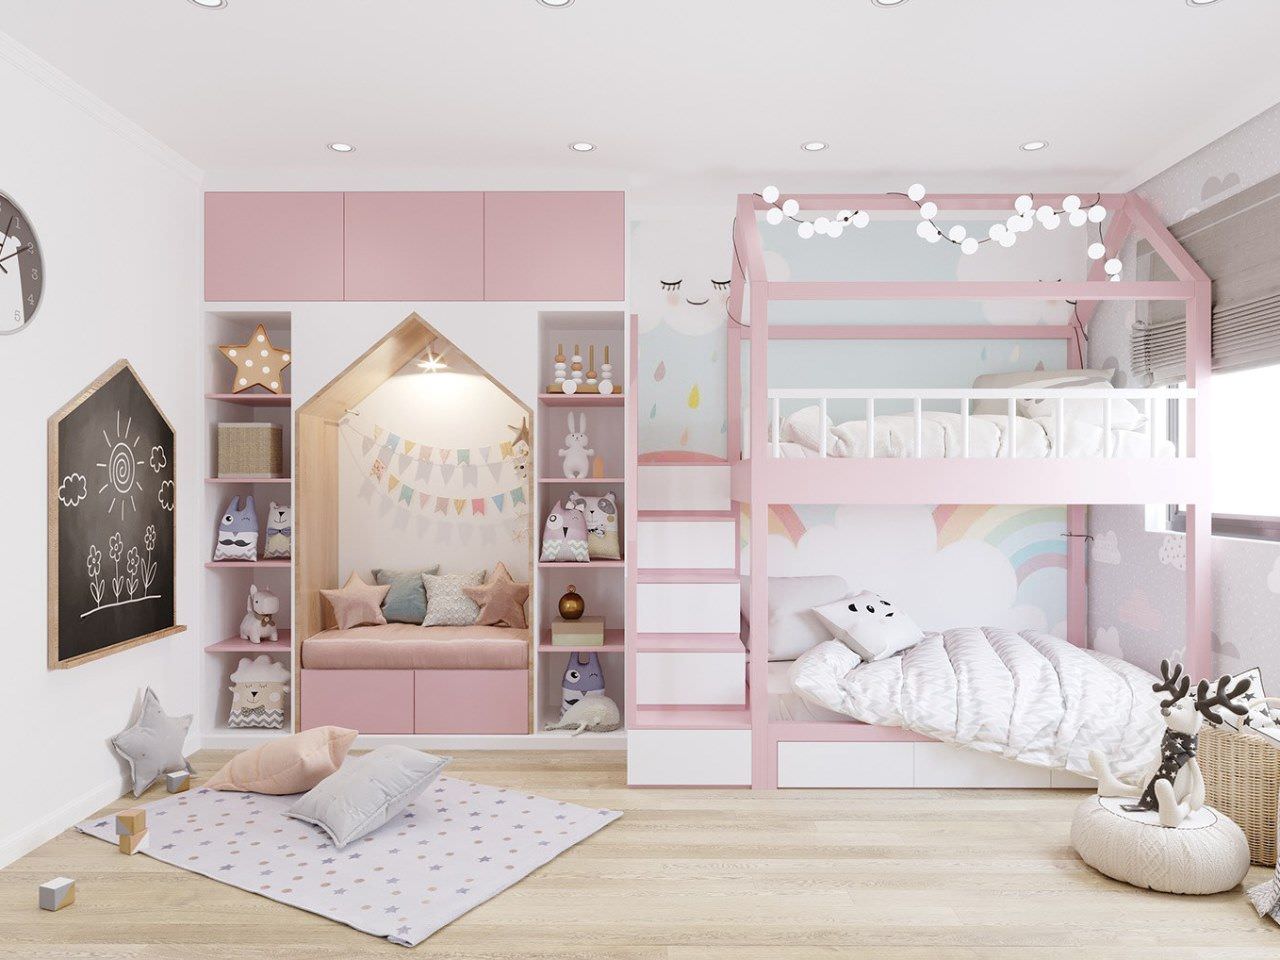 Giường tầng gỗ công nghiệp hiện đại phối màu trắng hồng dành cho các bé gái